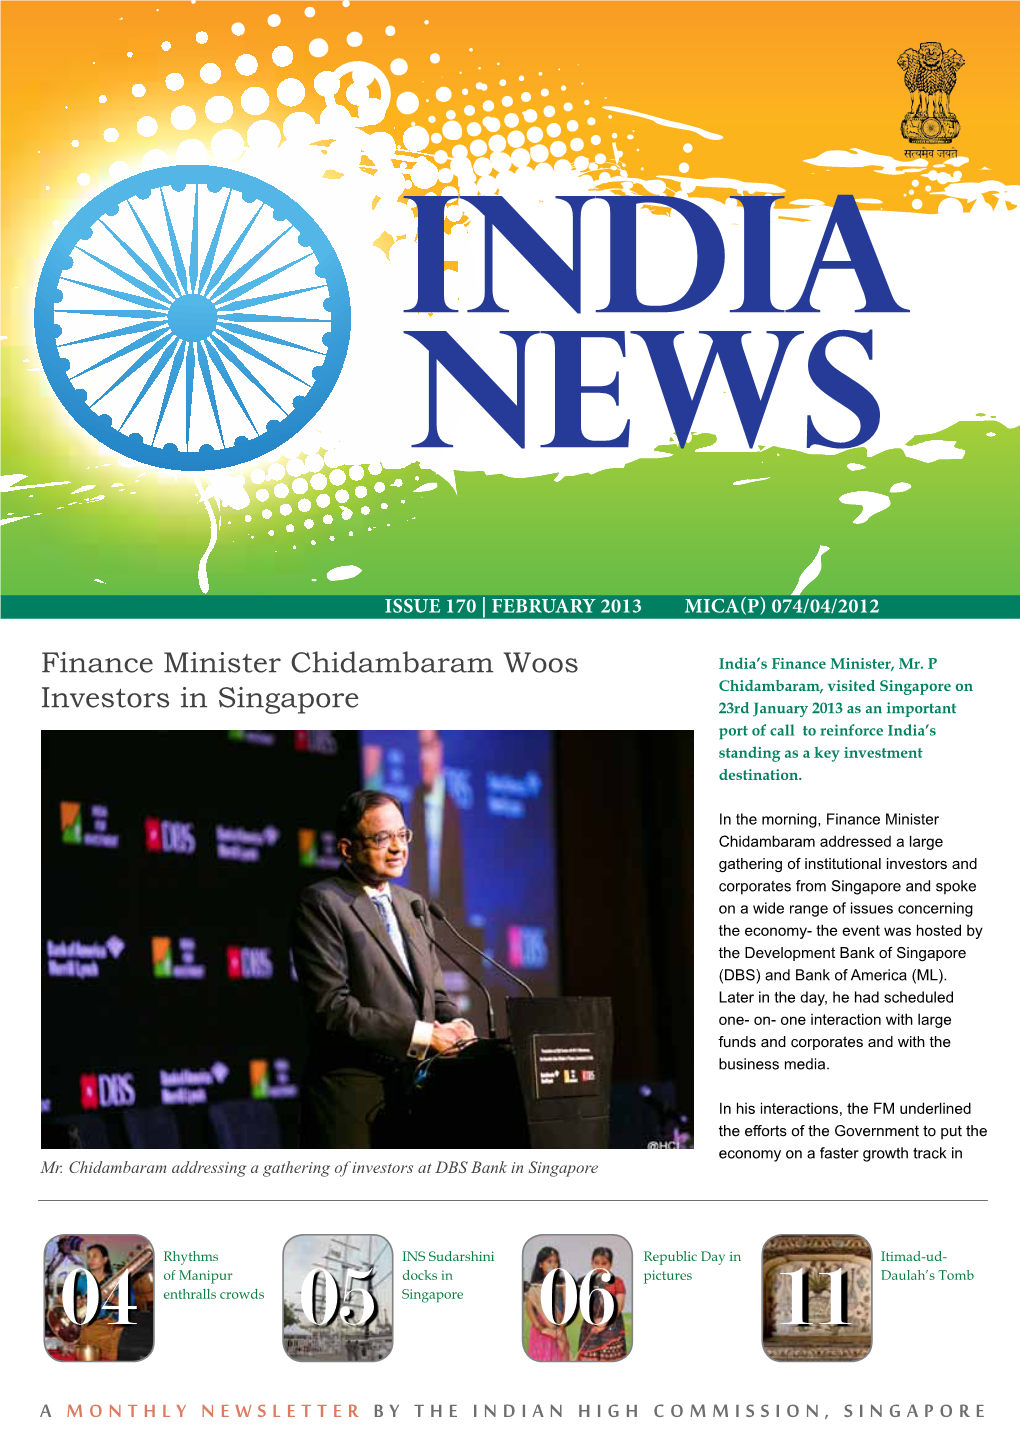 Finance Minister Chidambaram Woos Investors in Singapore